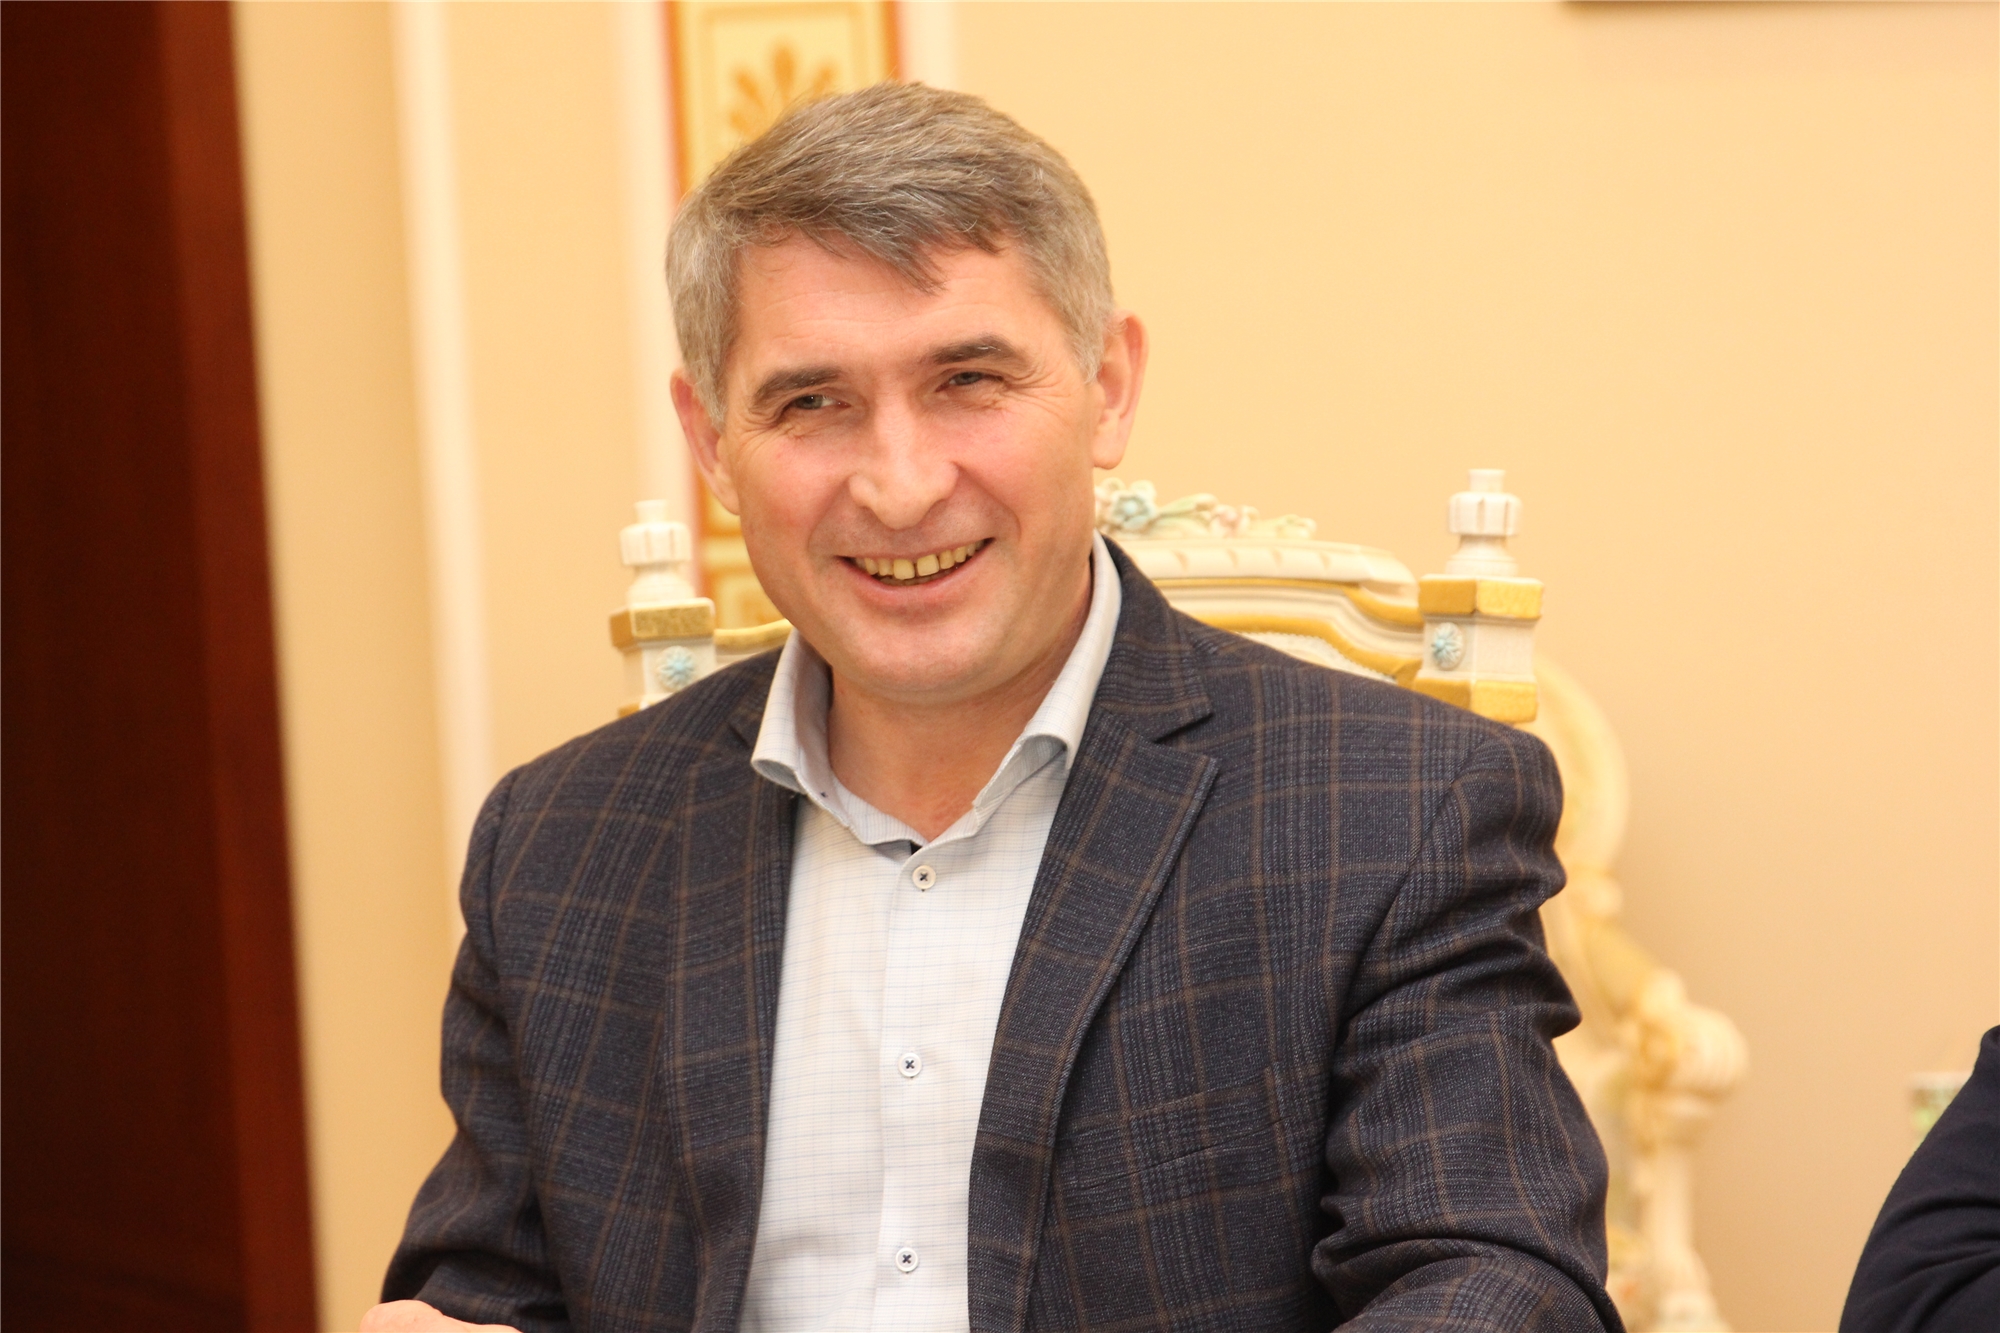 Сколько зарабатывает Олег Николаев в месяц: отчет о доходах главы Чувашии